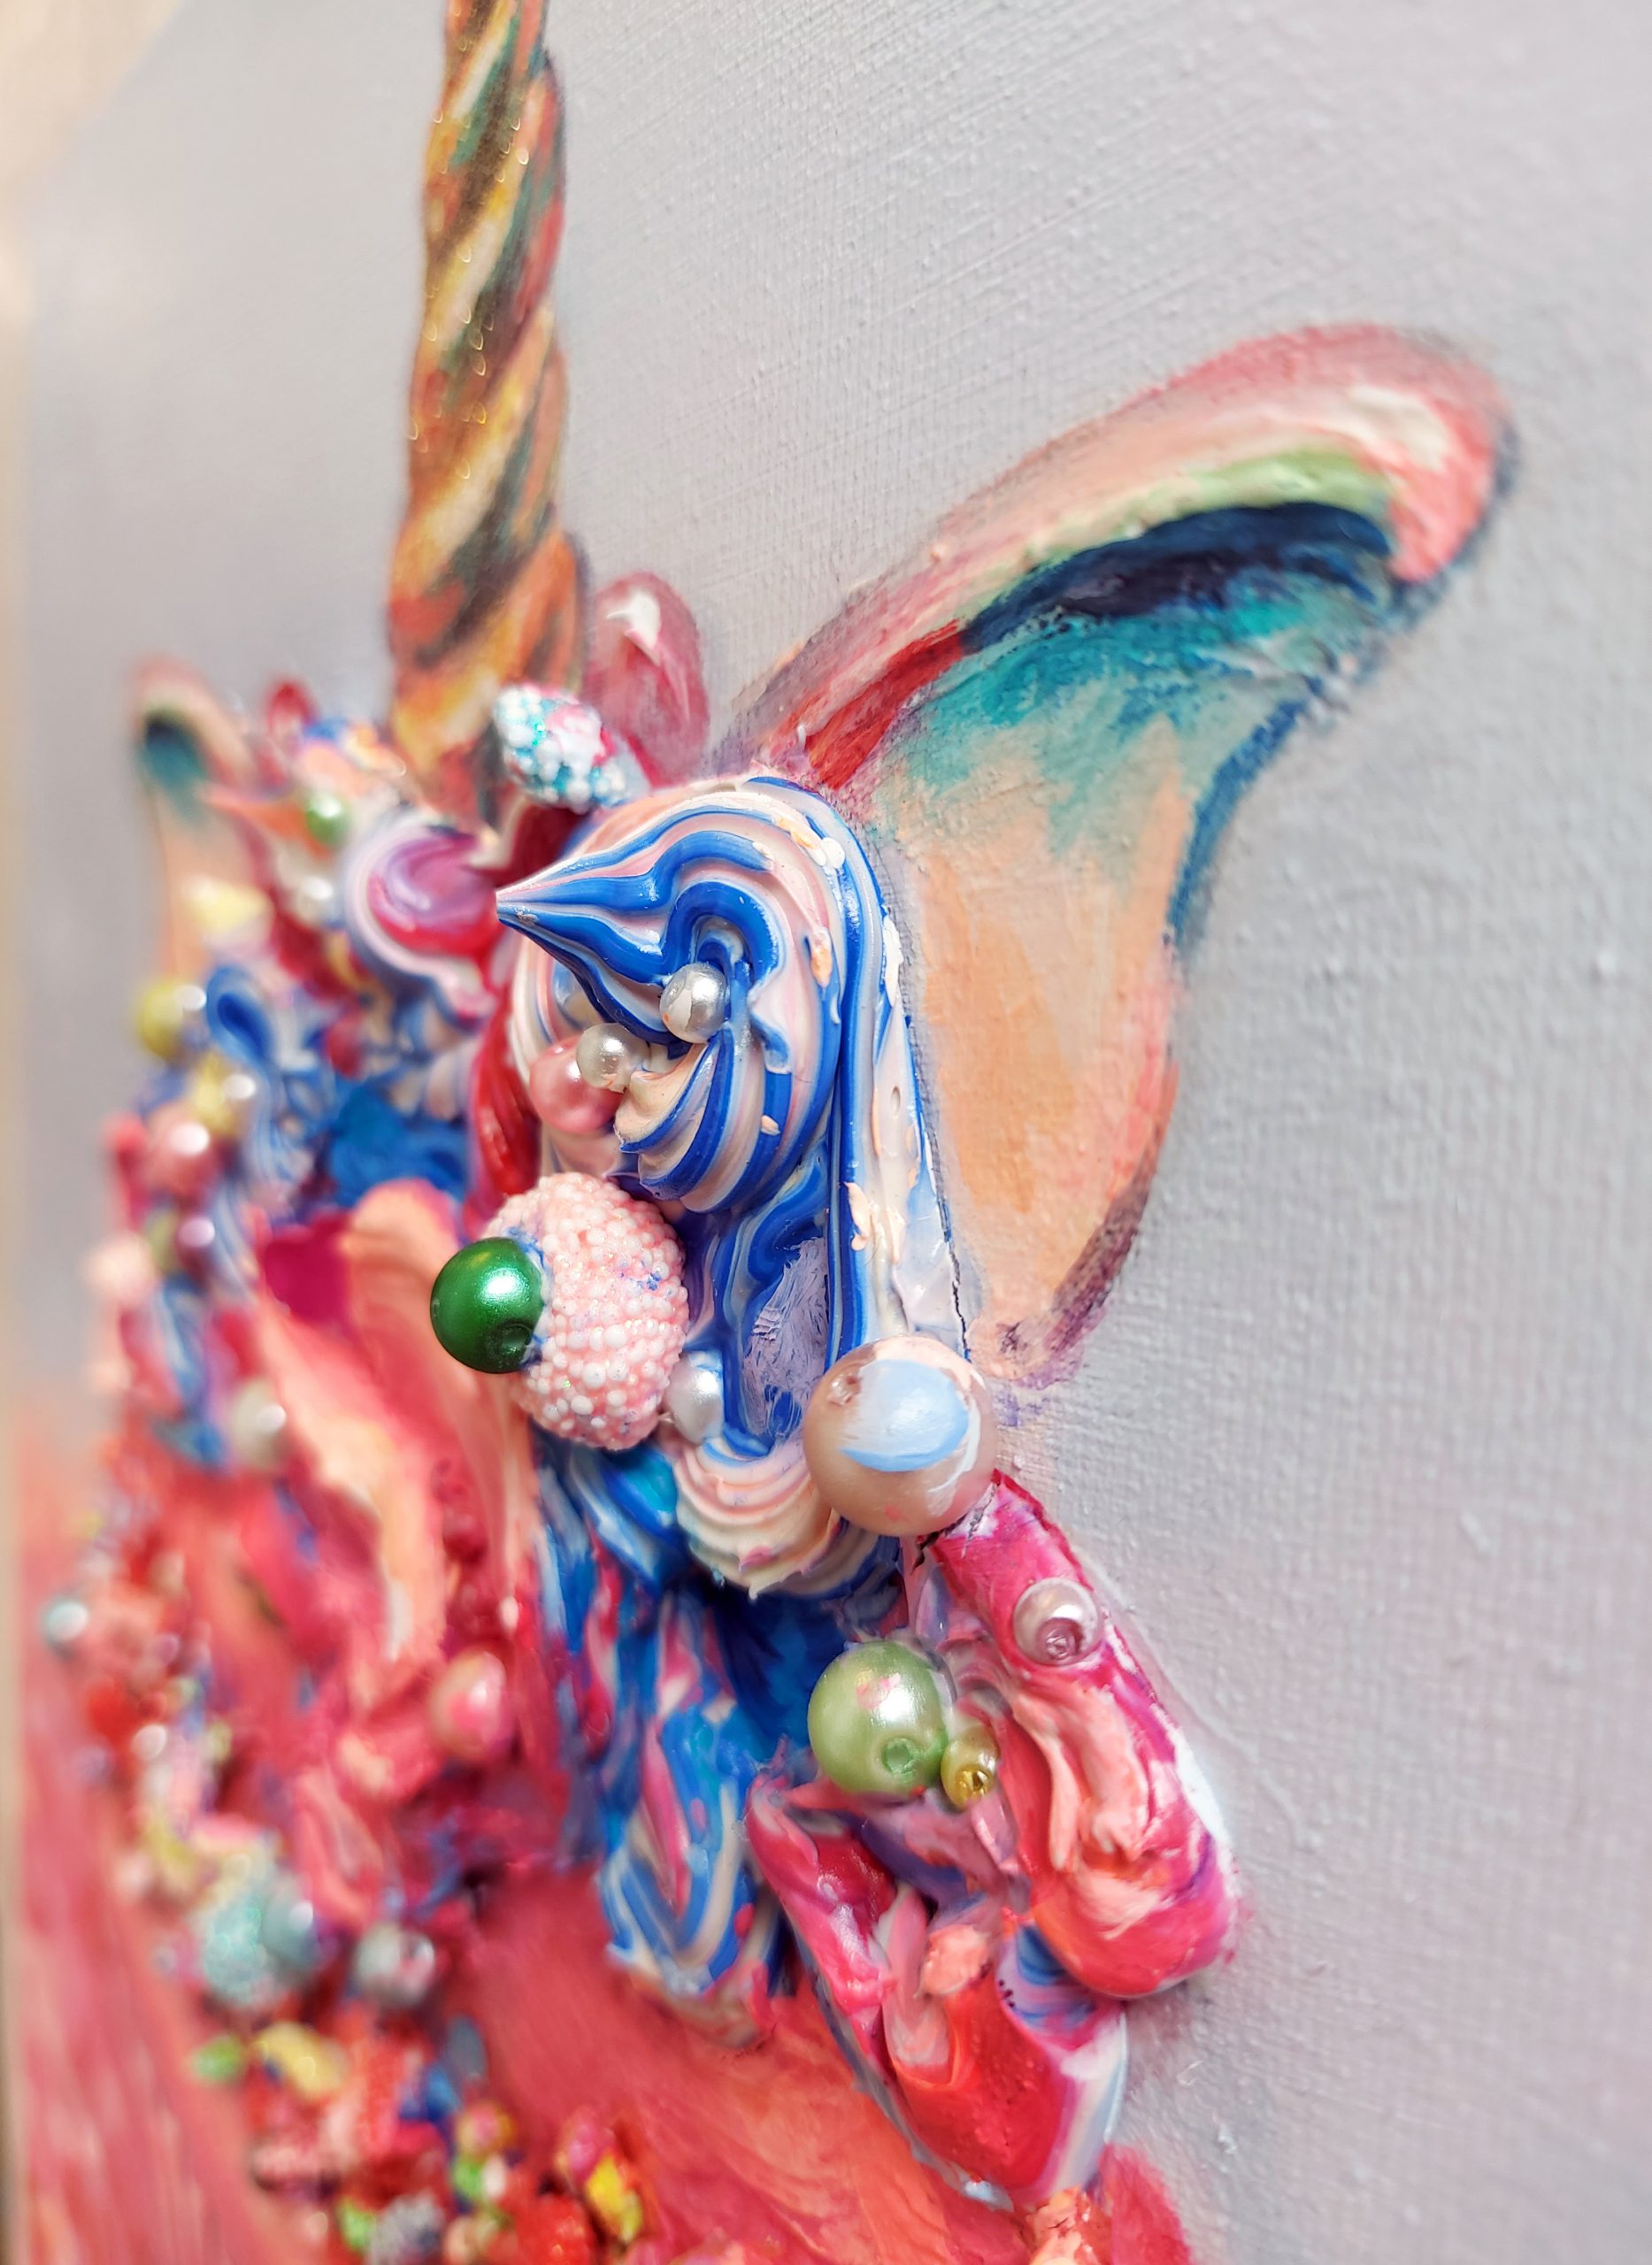 Detail, Unicorn Cupcake, 30x40cm, opzet met acryl op doek, Marinde Molendijk, 2019.